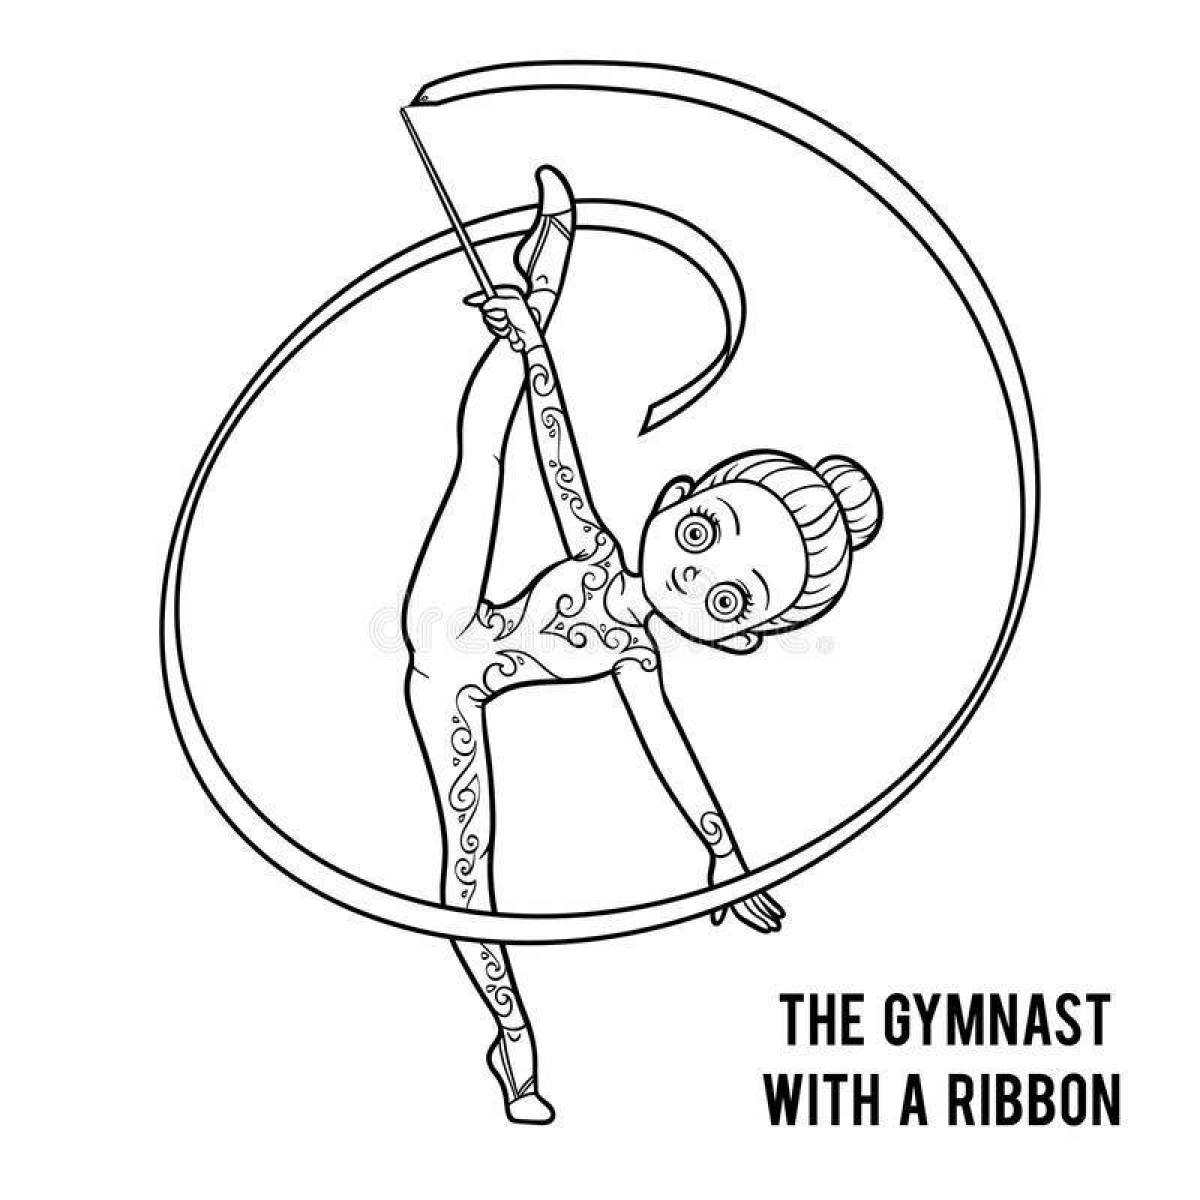 Brilliant rhythmic gymnastics coloring book